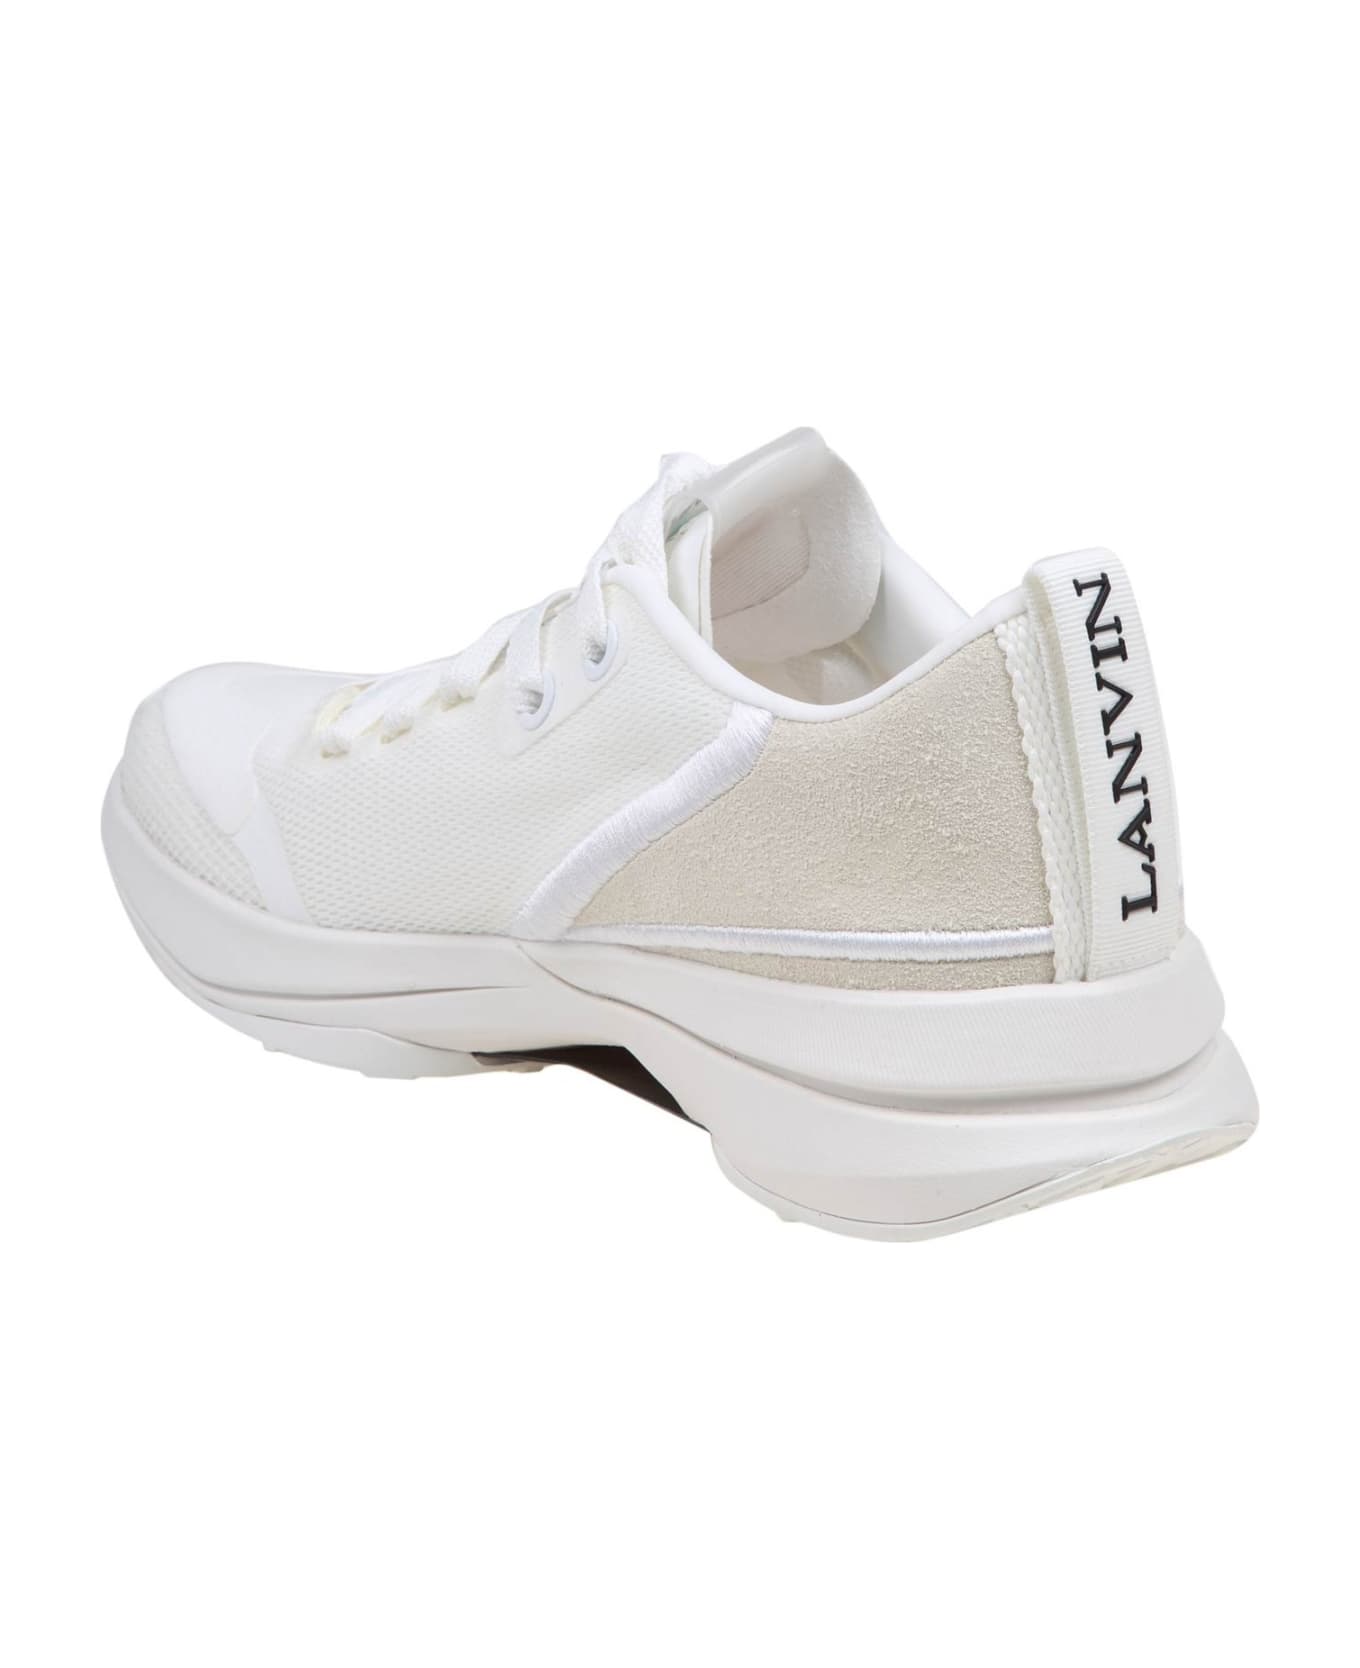 Lanvin Runner Sneakers In White Mesh - White/White スニーカー